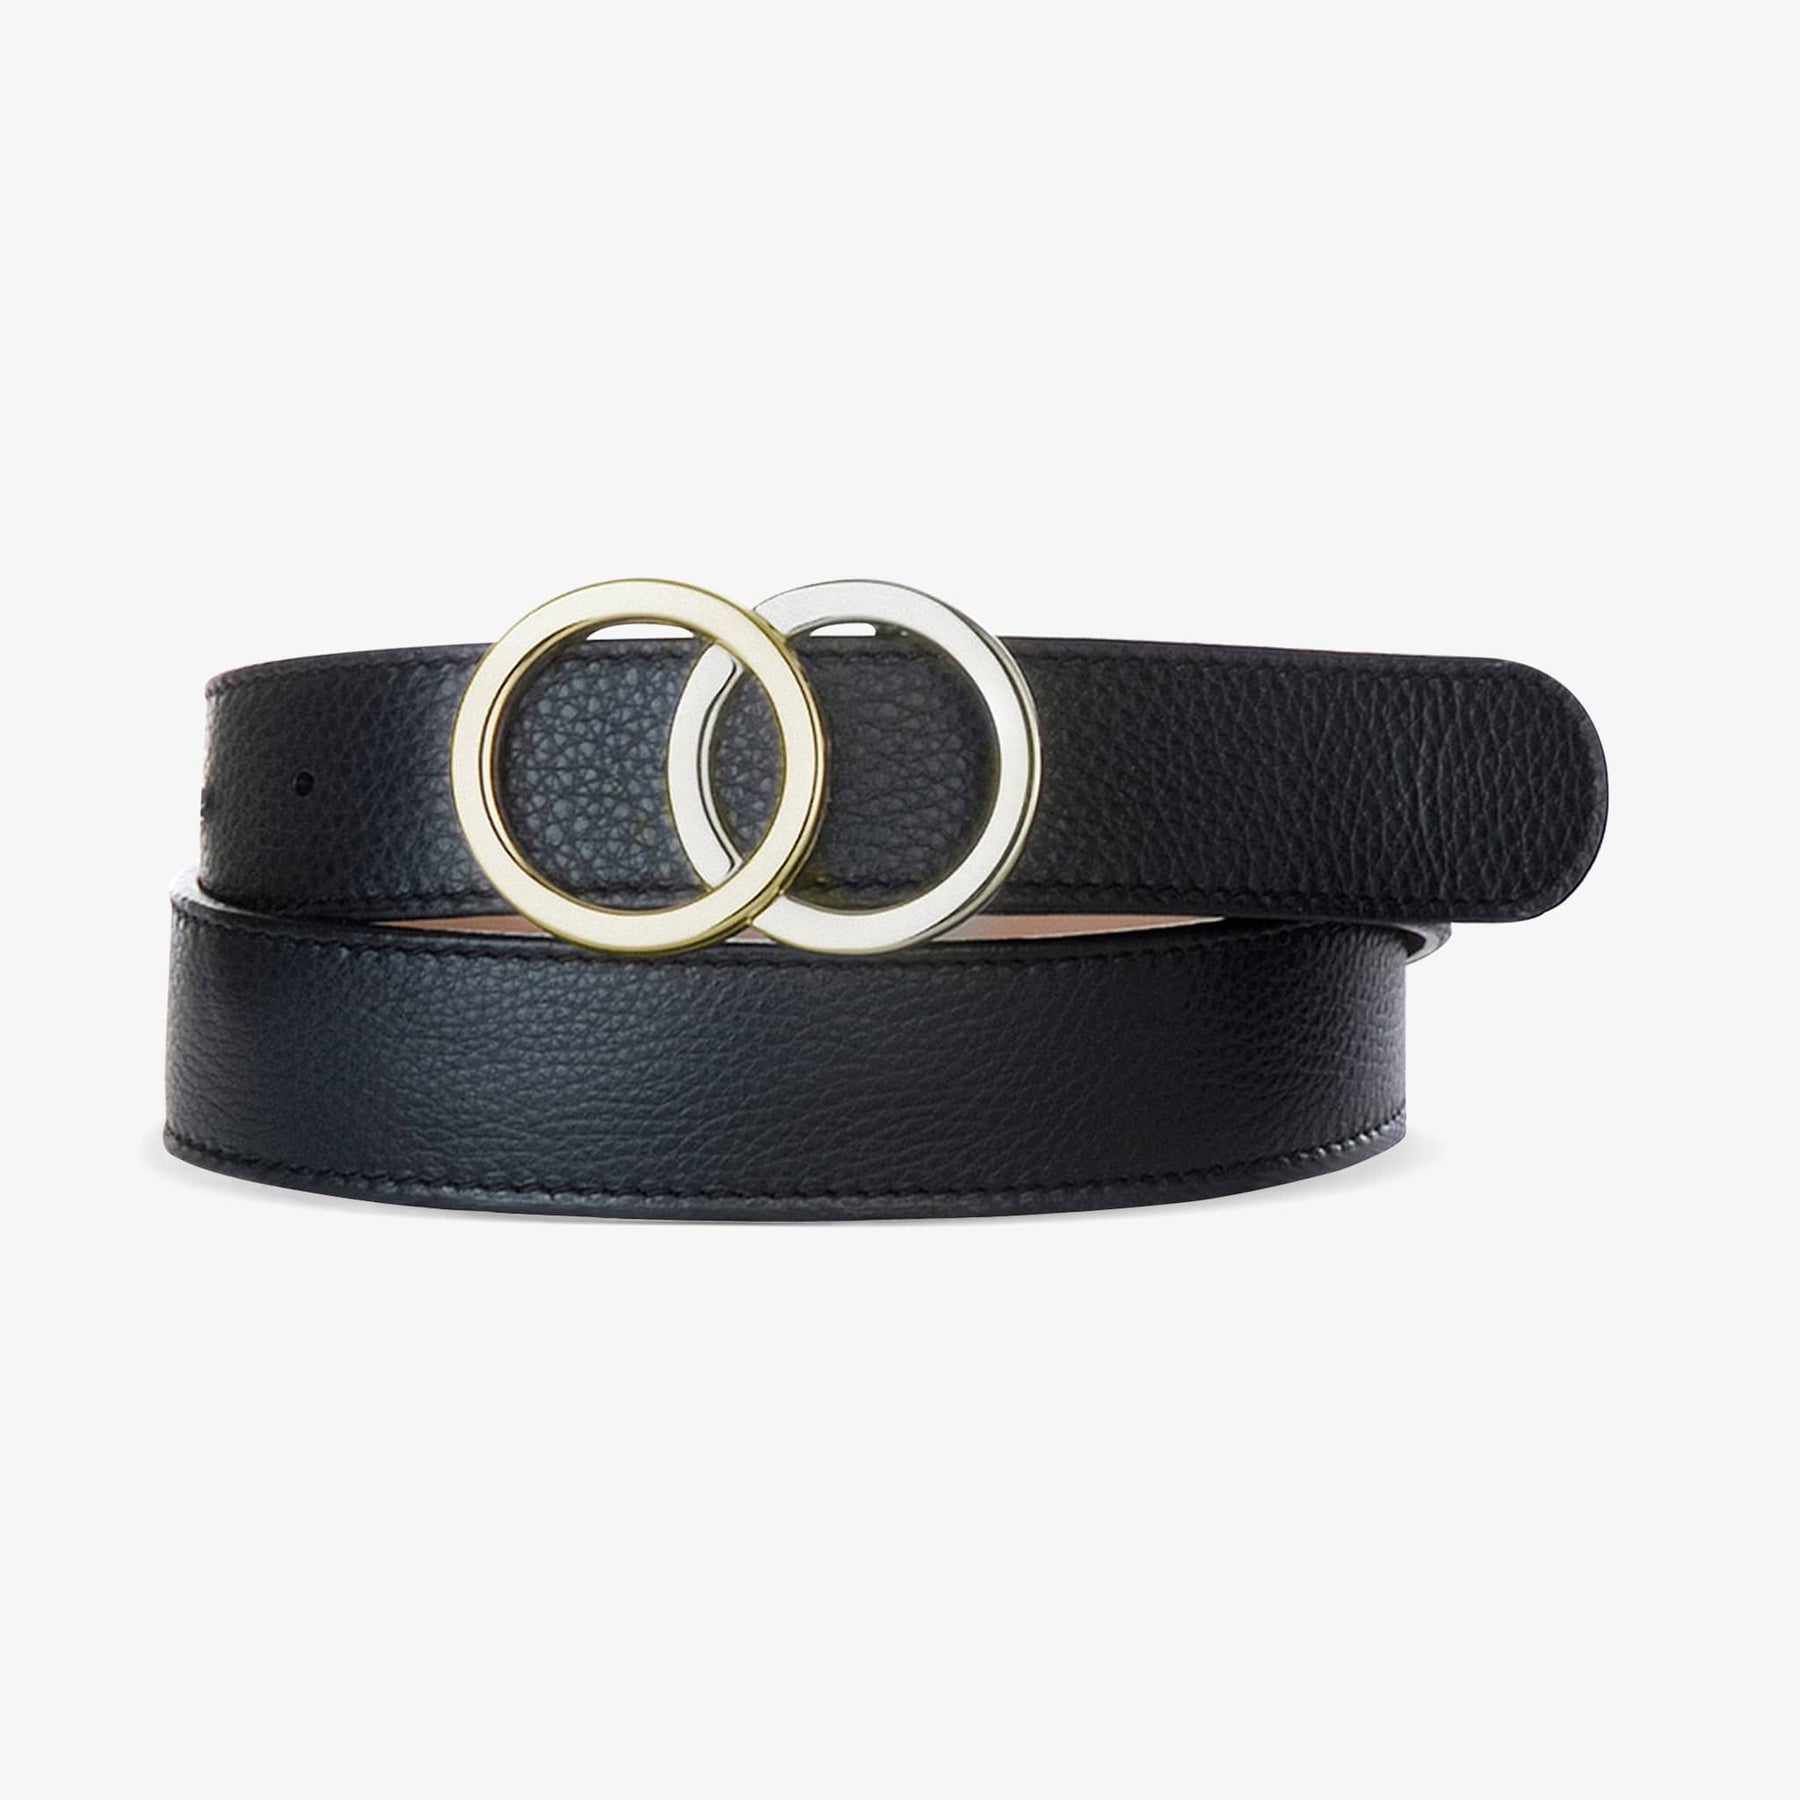 LEO BOUTIQUE Otir Pebbled Leather Belt Black Nappa BRAVE BELTS